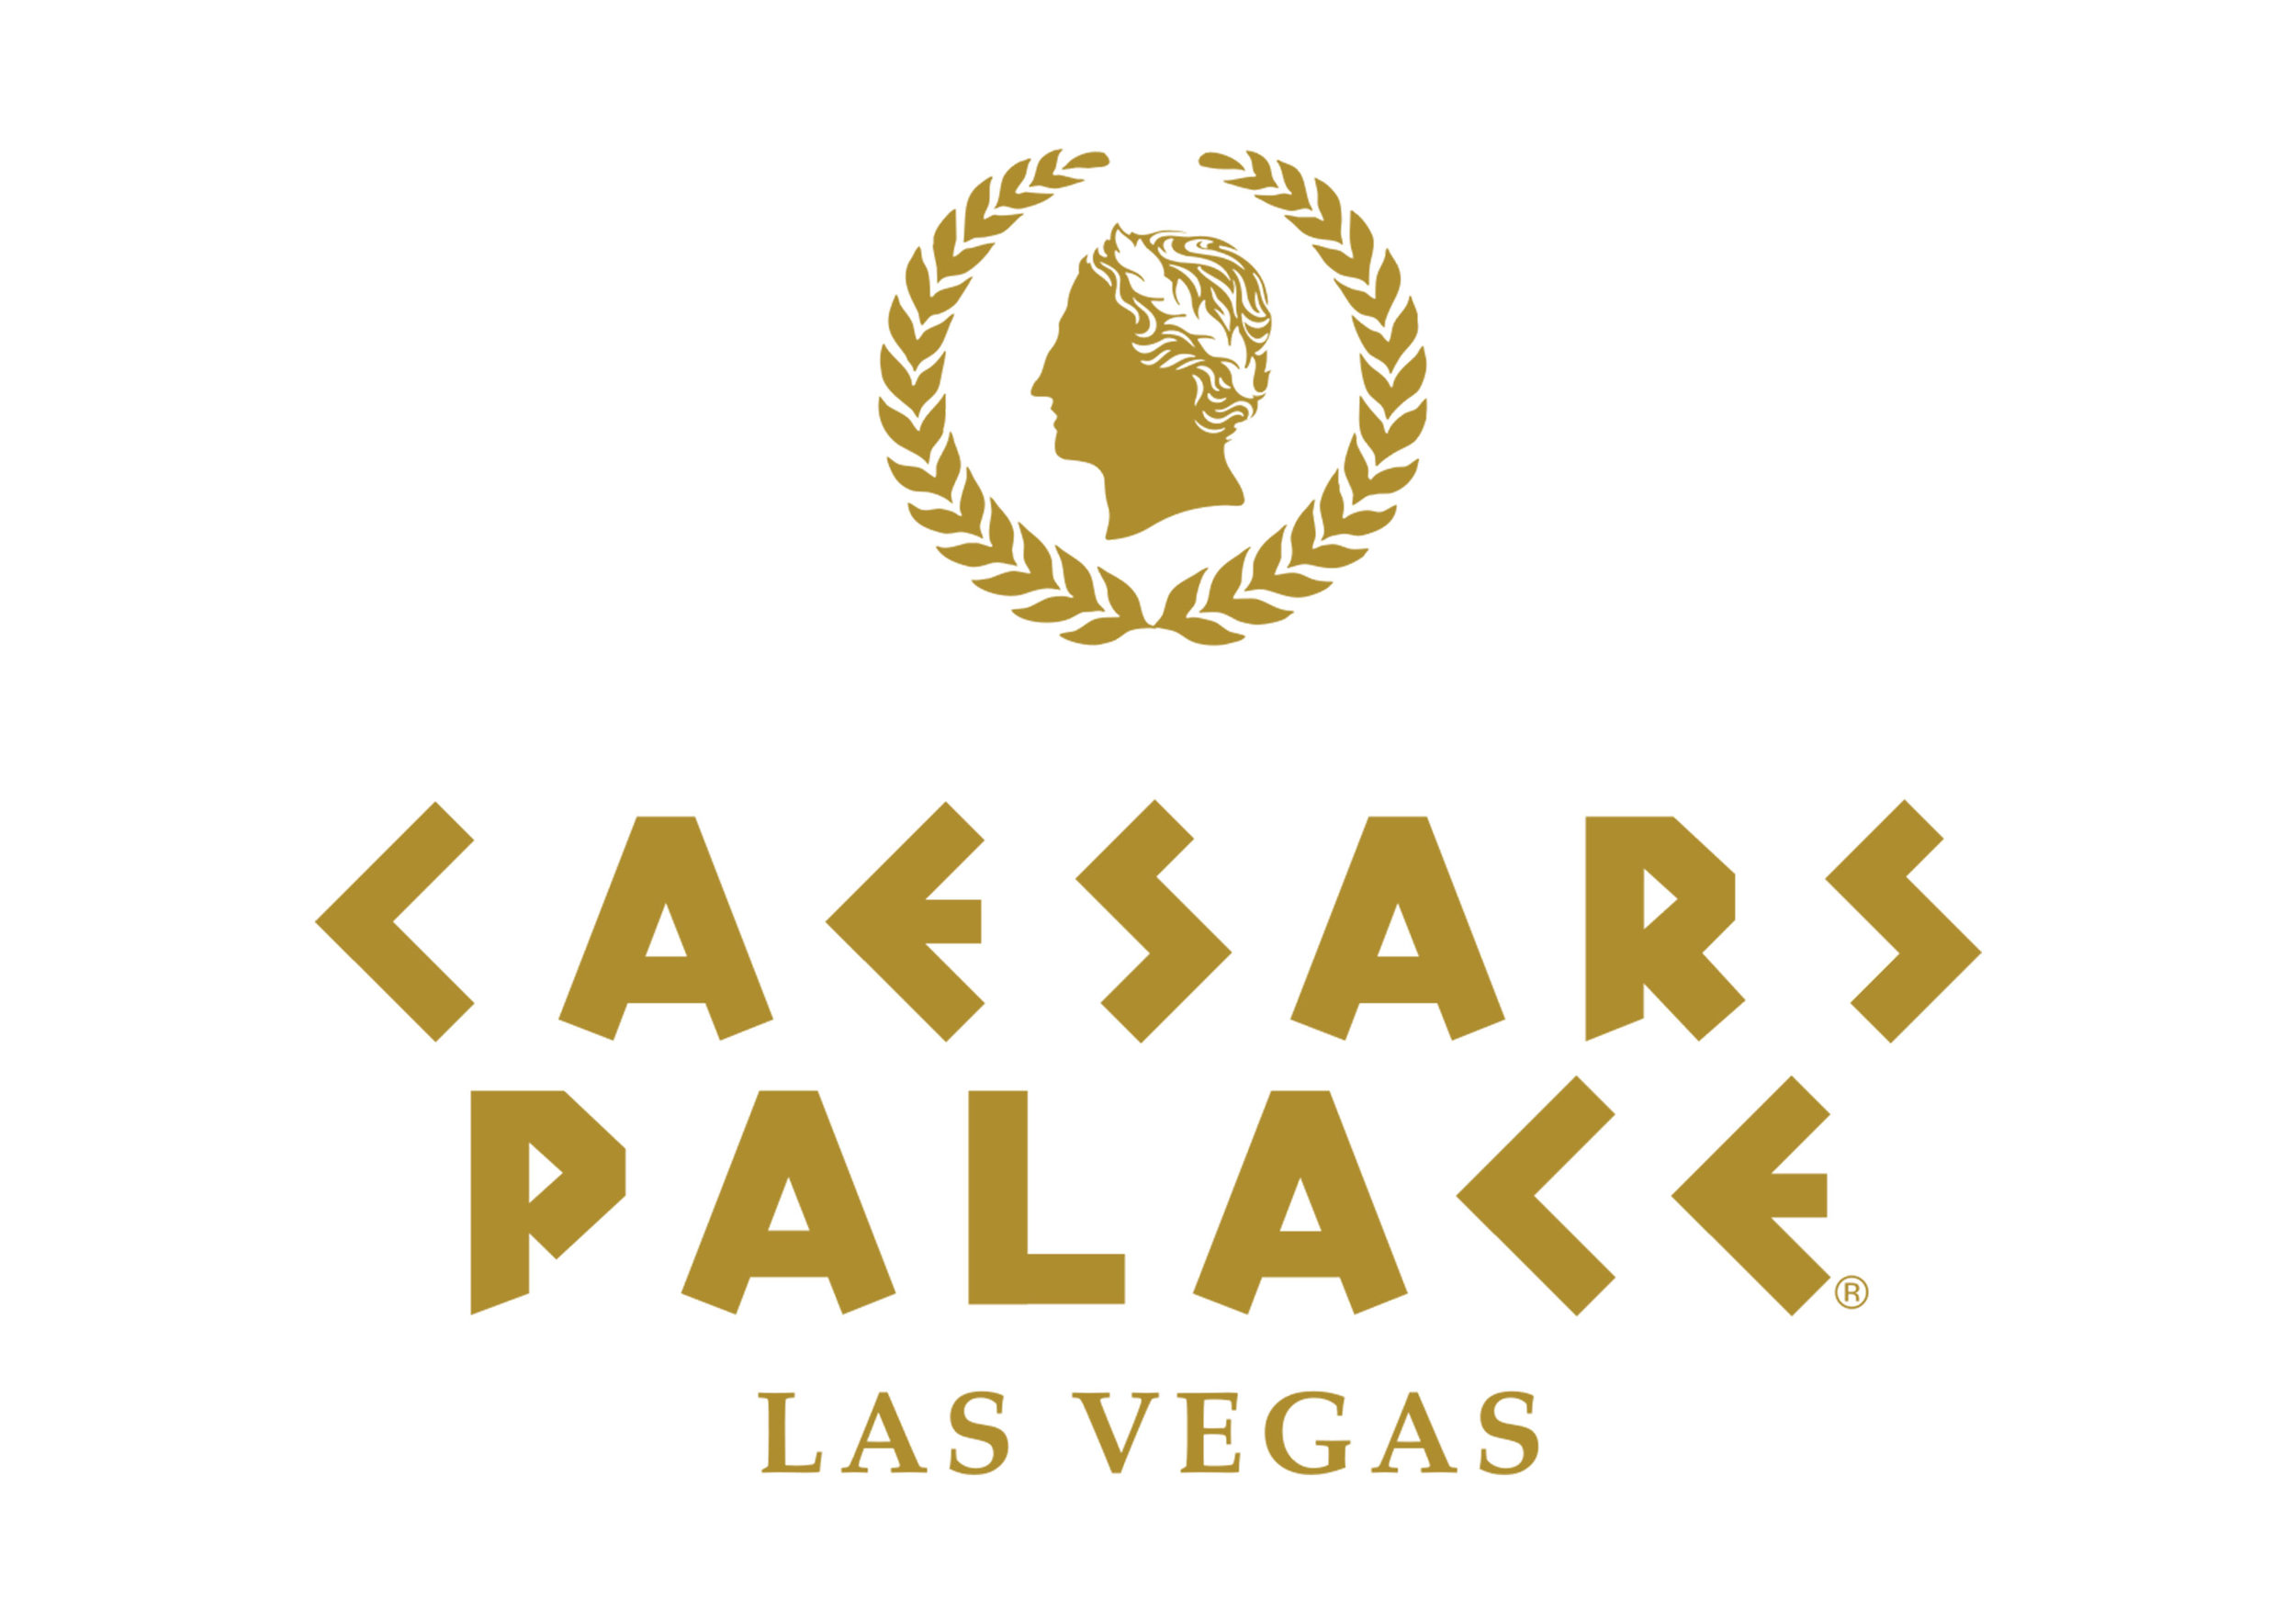  ..  Caesars Palace Las Vegas USA 